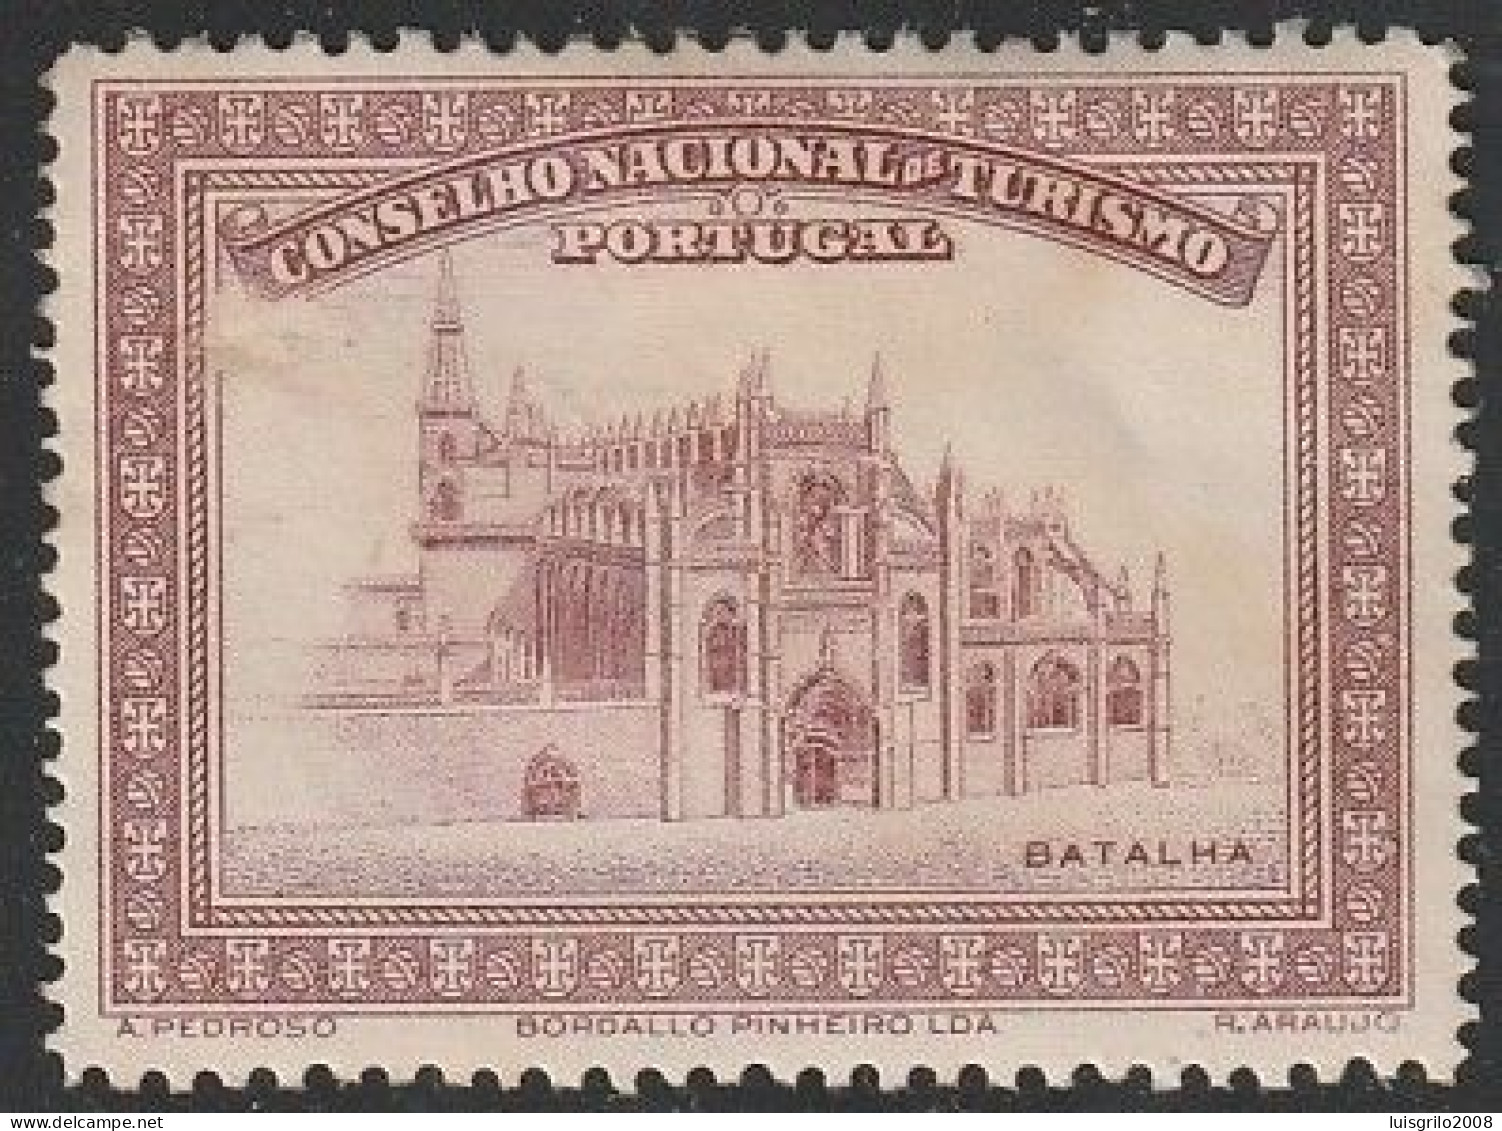 Vignette/ Vinheta, Portugal - 1930, Conselho Nacional De Turismo. Mosteiro Da Batalha -||- MNH, Sans Gomme - Local Post Stamps